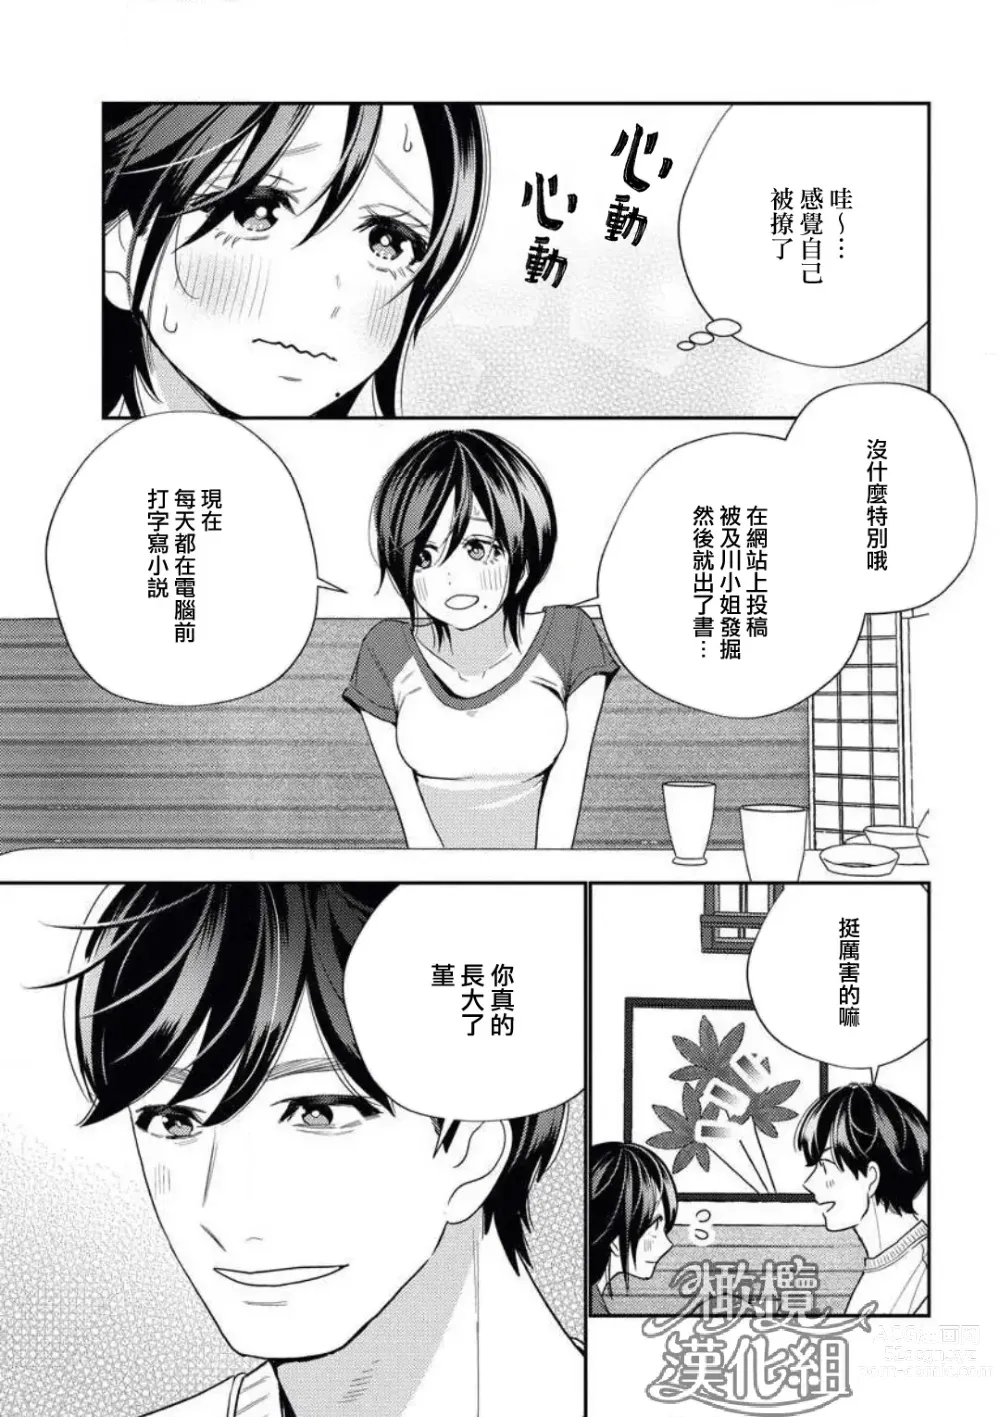 Page 13 of manga 青梅竹马难以攻陷被小黄话（※正当工作需求）玩弄一番